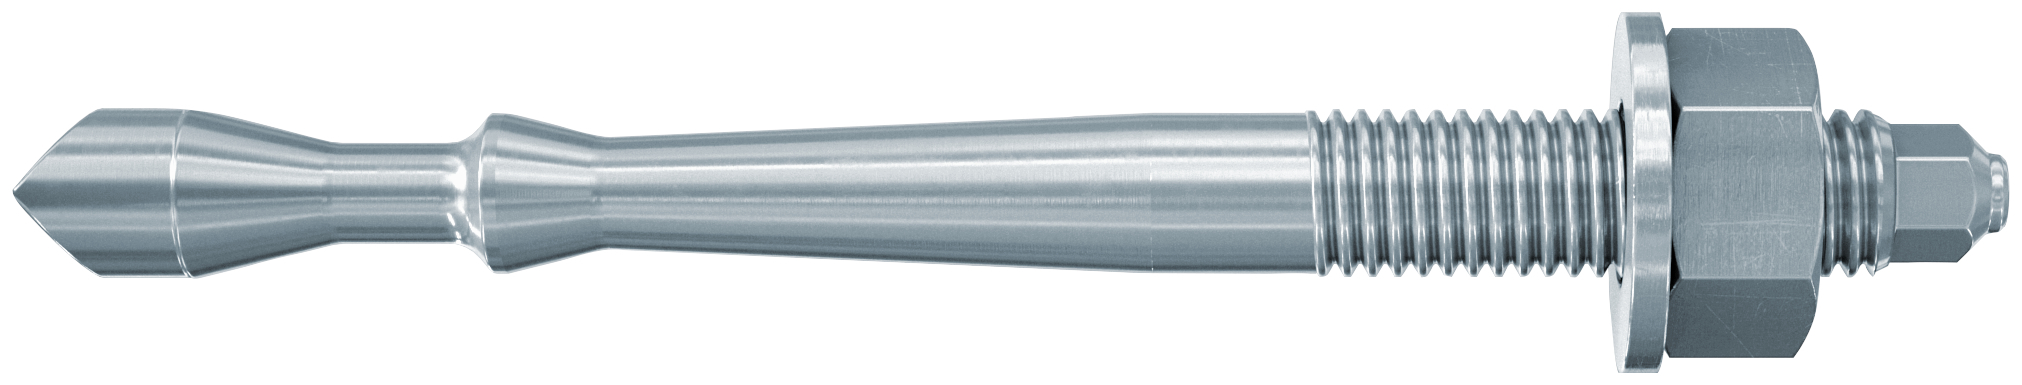 fischer Barra multicono in acciaio FHB II-A S M10x60/20 per ancorante chimico FIS HB (1 Pz.) Barra multicono corta in acciaio zincato classe 8.8.Massime prestazioni a trazione in calcestruzzo fessurato e a ridotte distanze dai bordi..